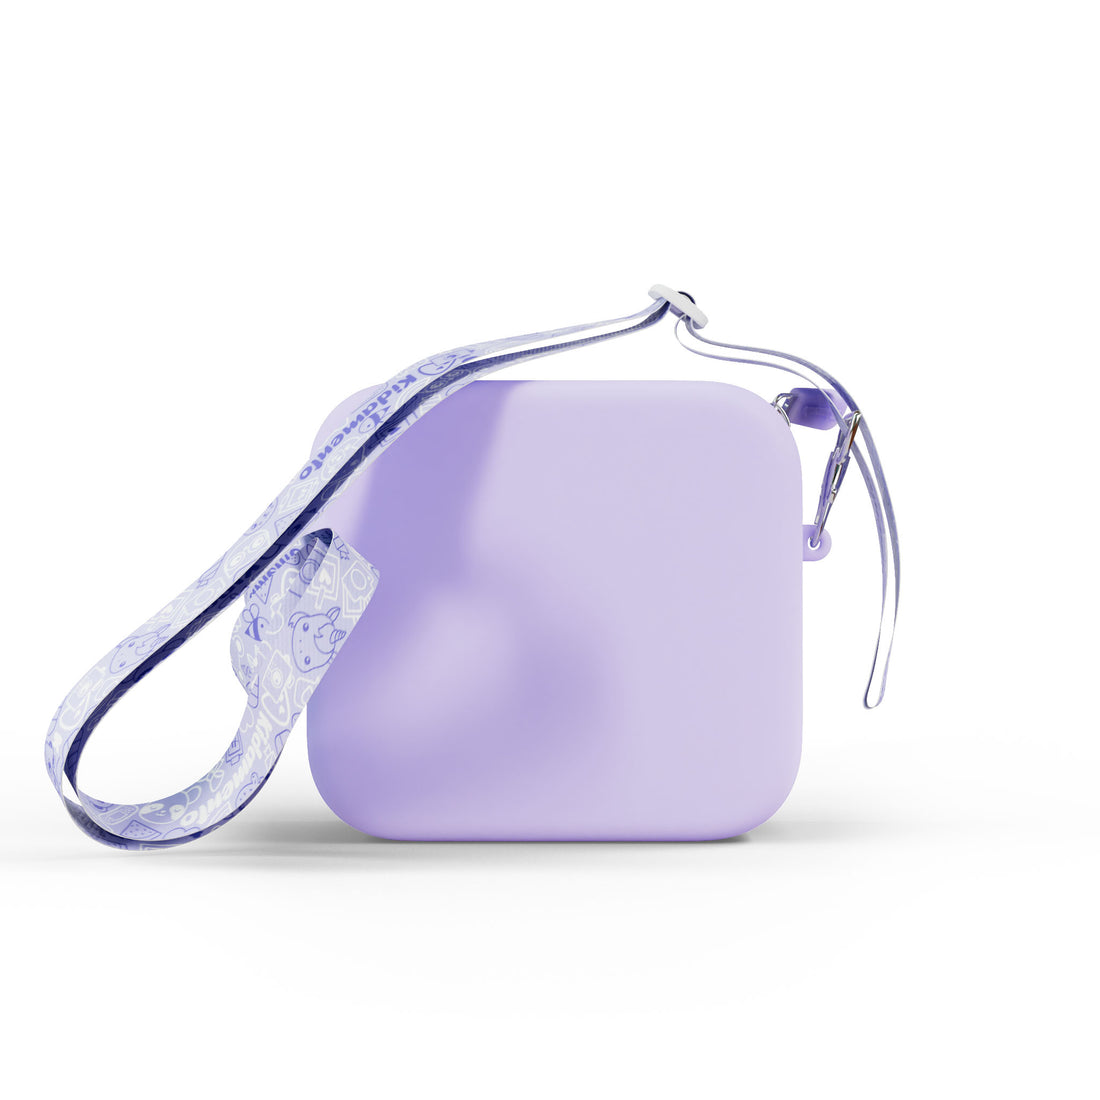 Silicone Bag - Purple Unicorn